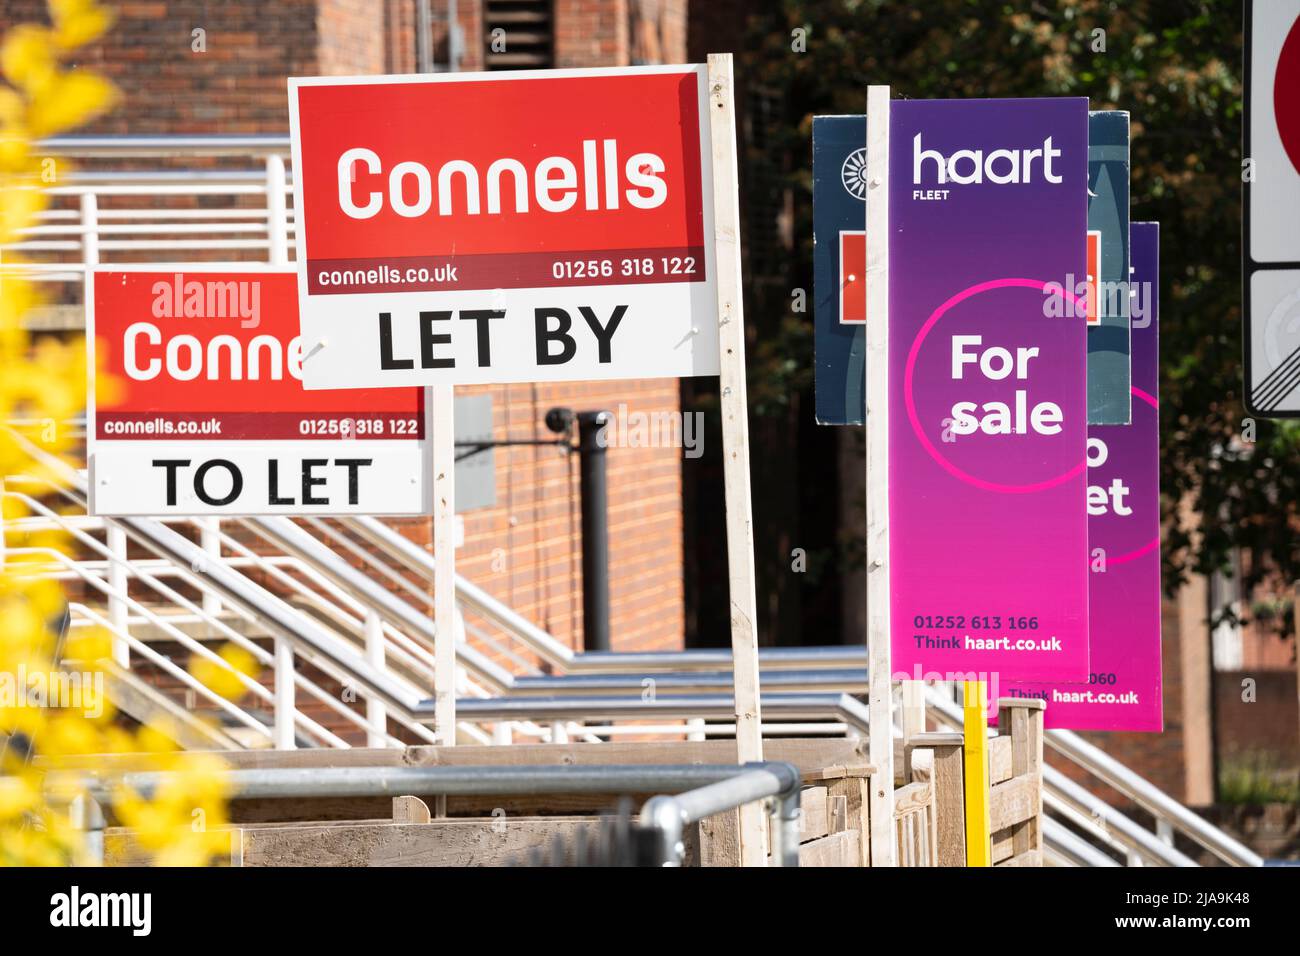 UK Immobilienmakler Zeichen zeigen Immobilien zum Verkauf und zu vermieten. Konzept - Absturz des Immobilienmarktes, durchschnittlicher britischer Immobilienpreis, Immobilienmarkt, steigende Preise Stockfoto